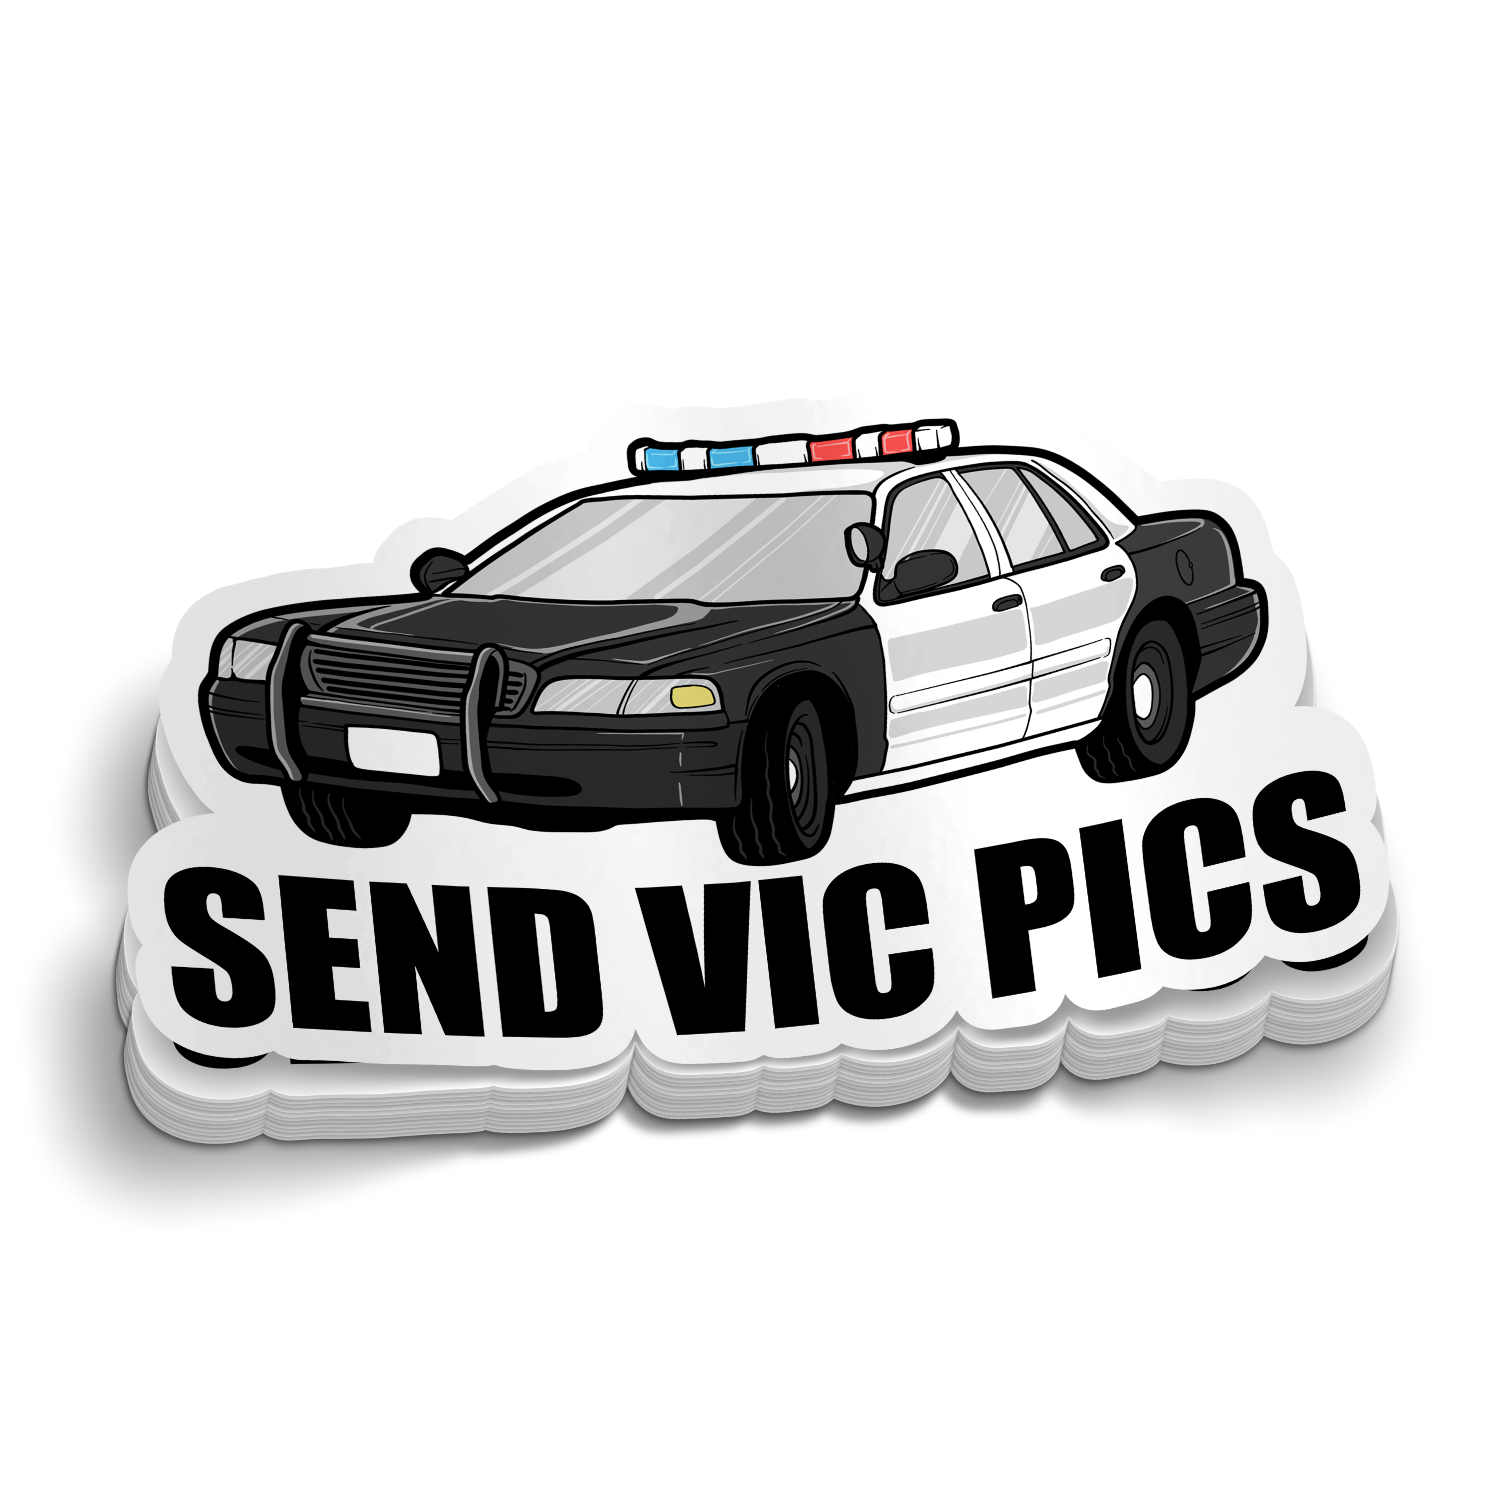 Send Vic Pics Funny Police Sticker